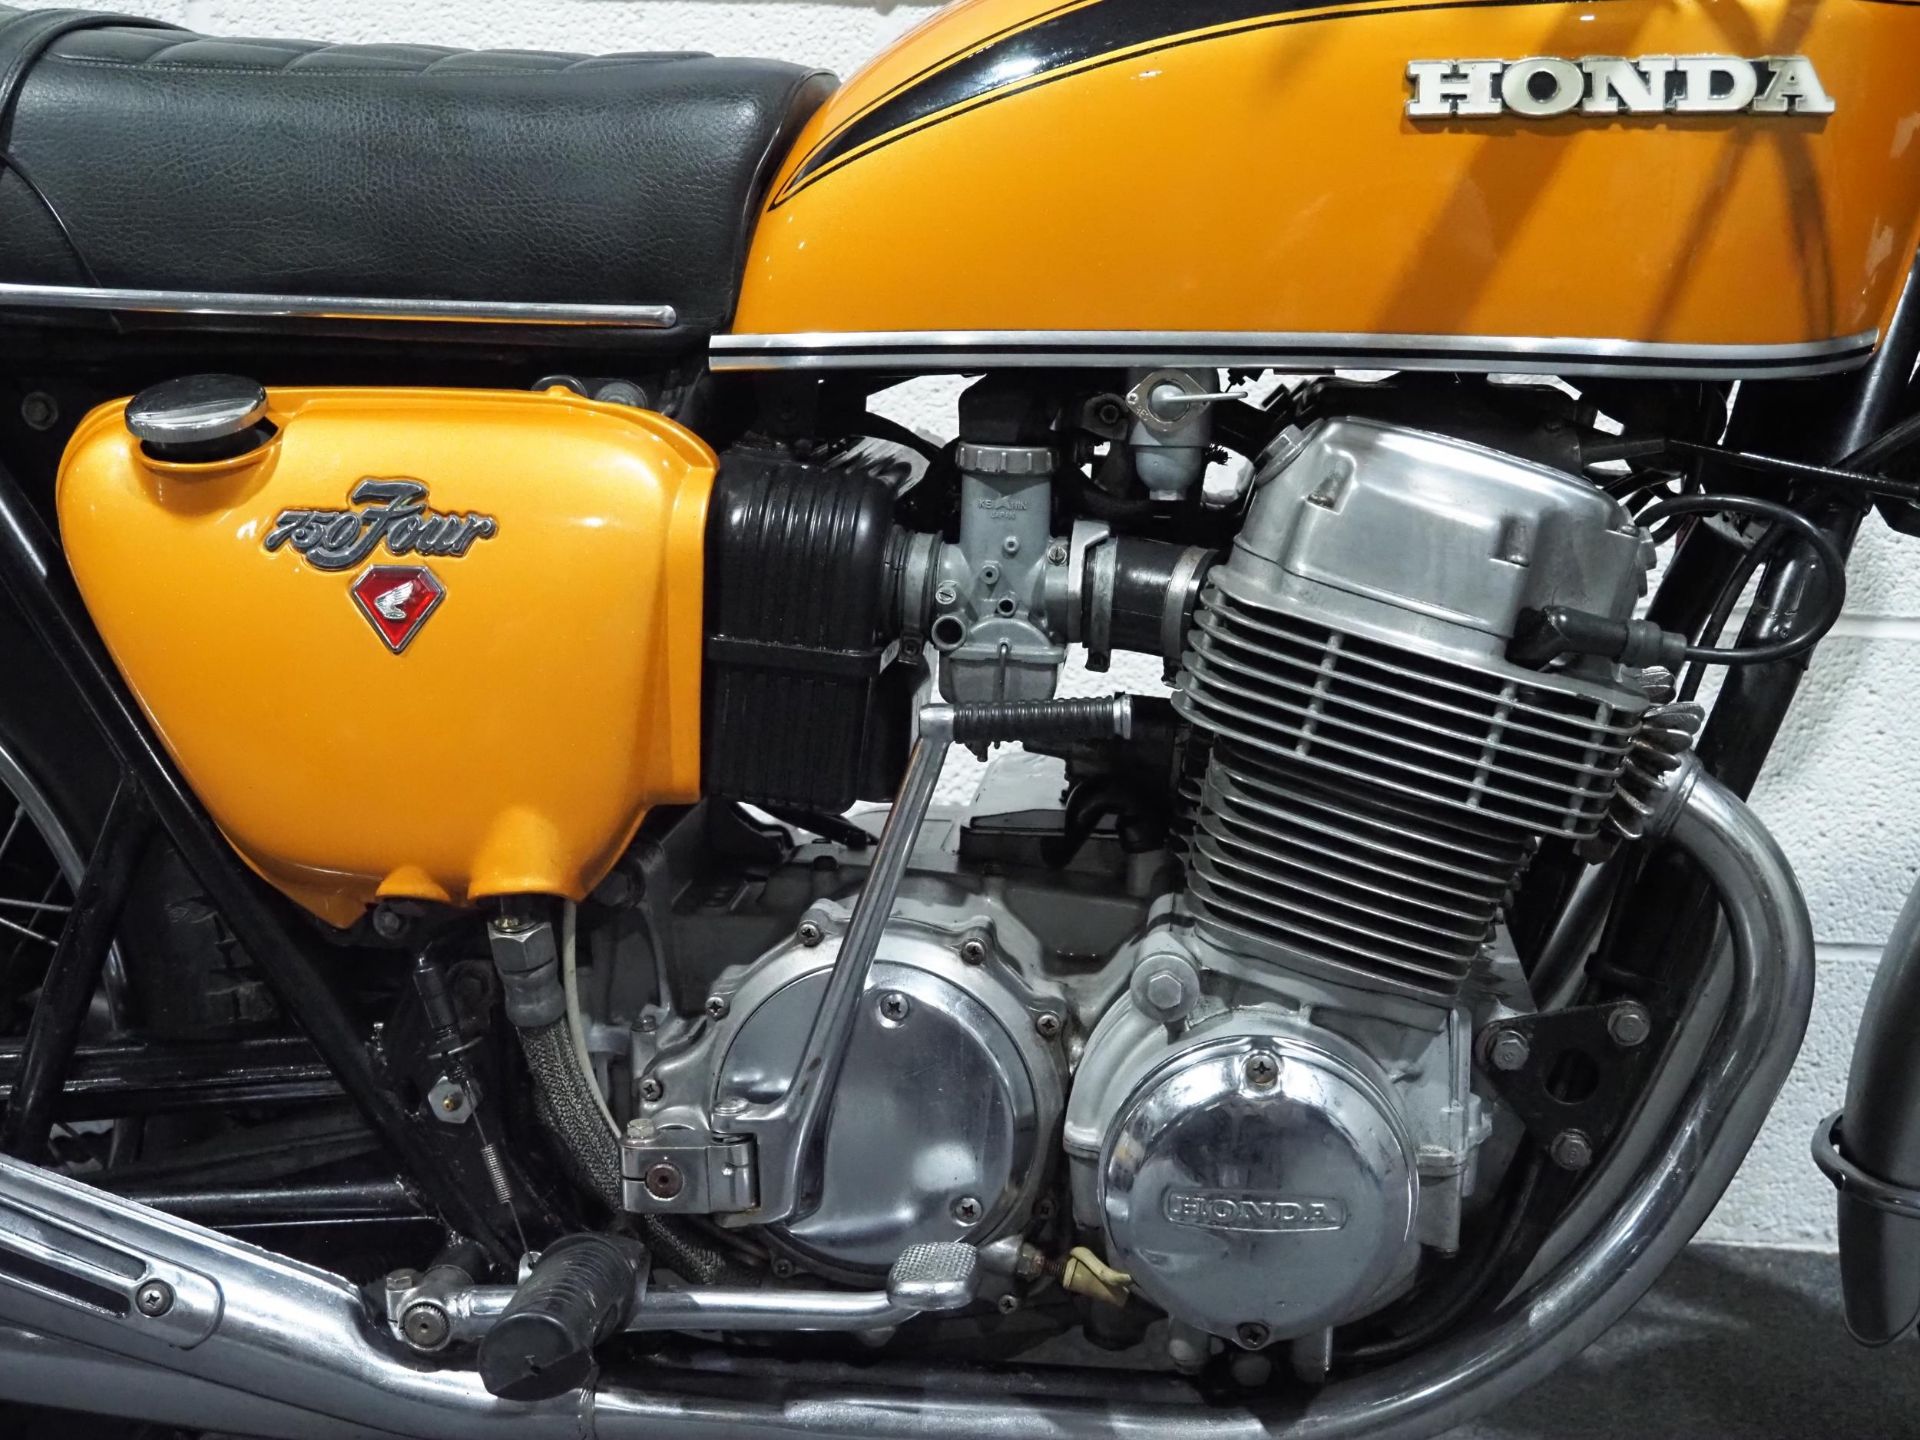 Honda 750-4 motorcycle, 1971, 750cc Frame no. CB7501118119 Engine no. CB7501117934 Runs and rides, - Image 5 of 8